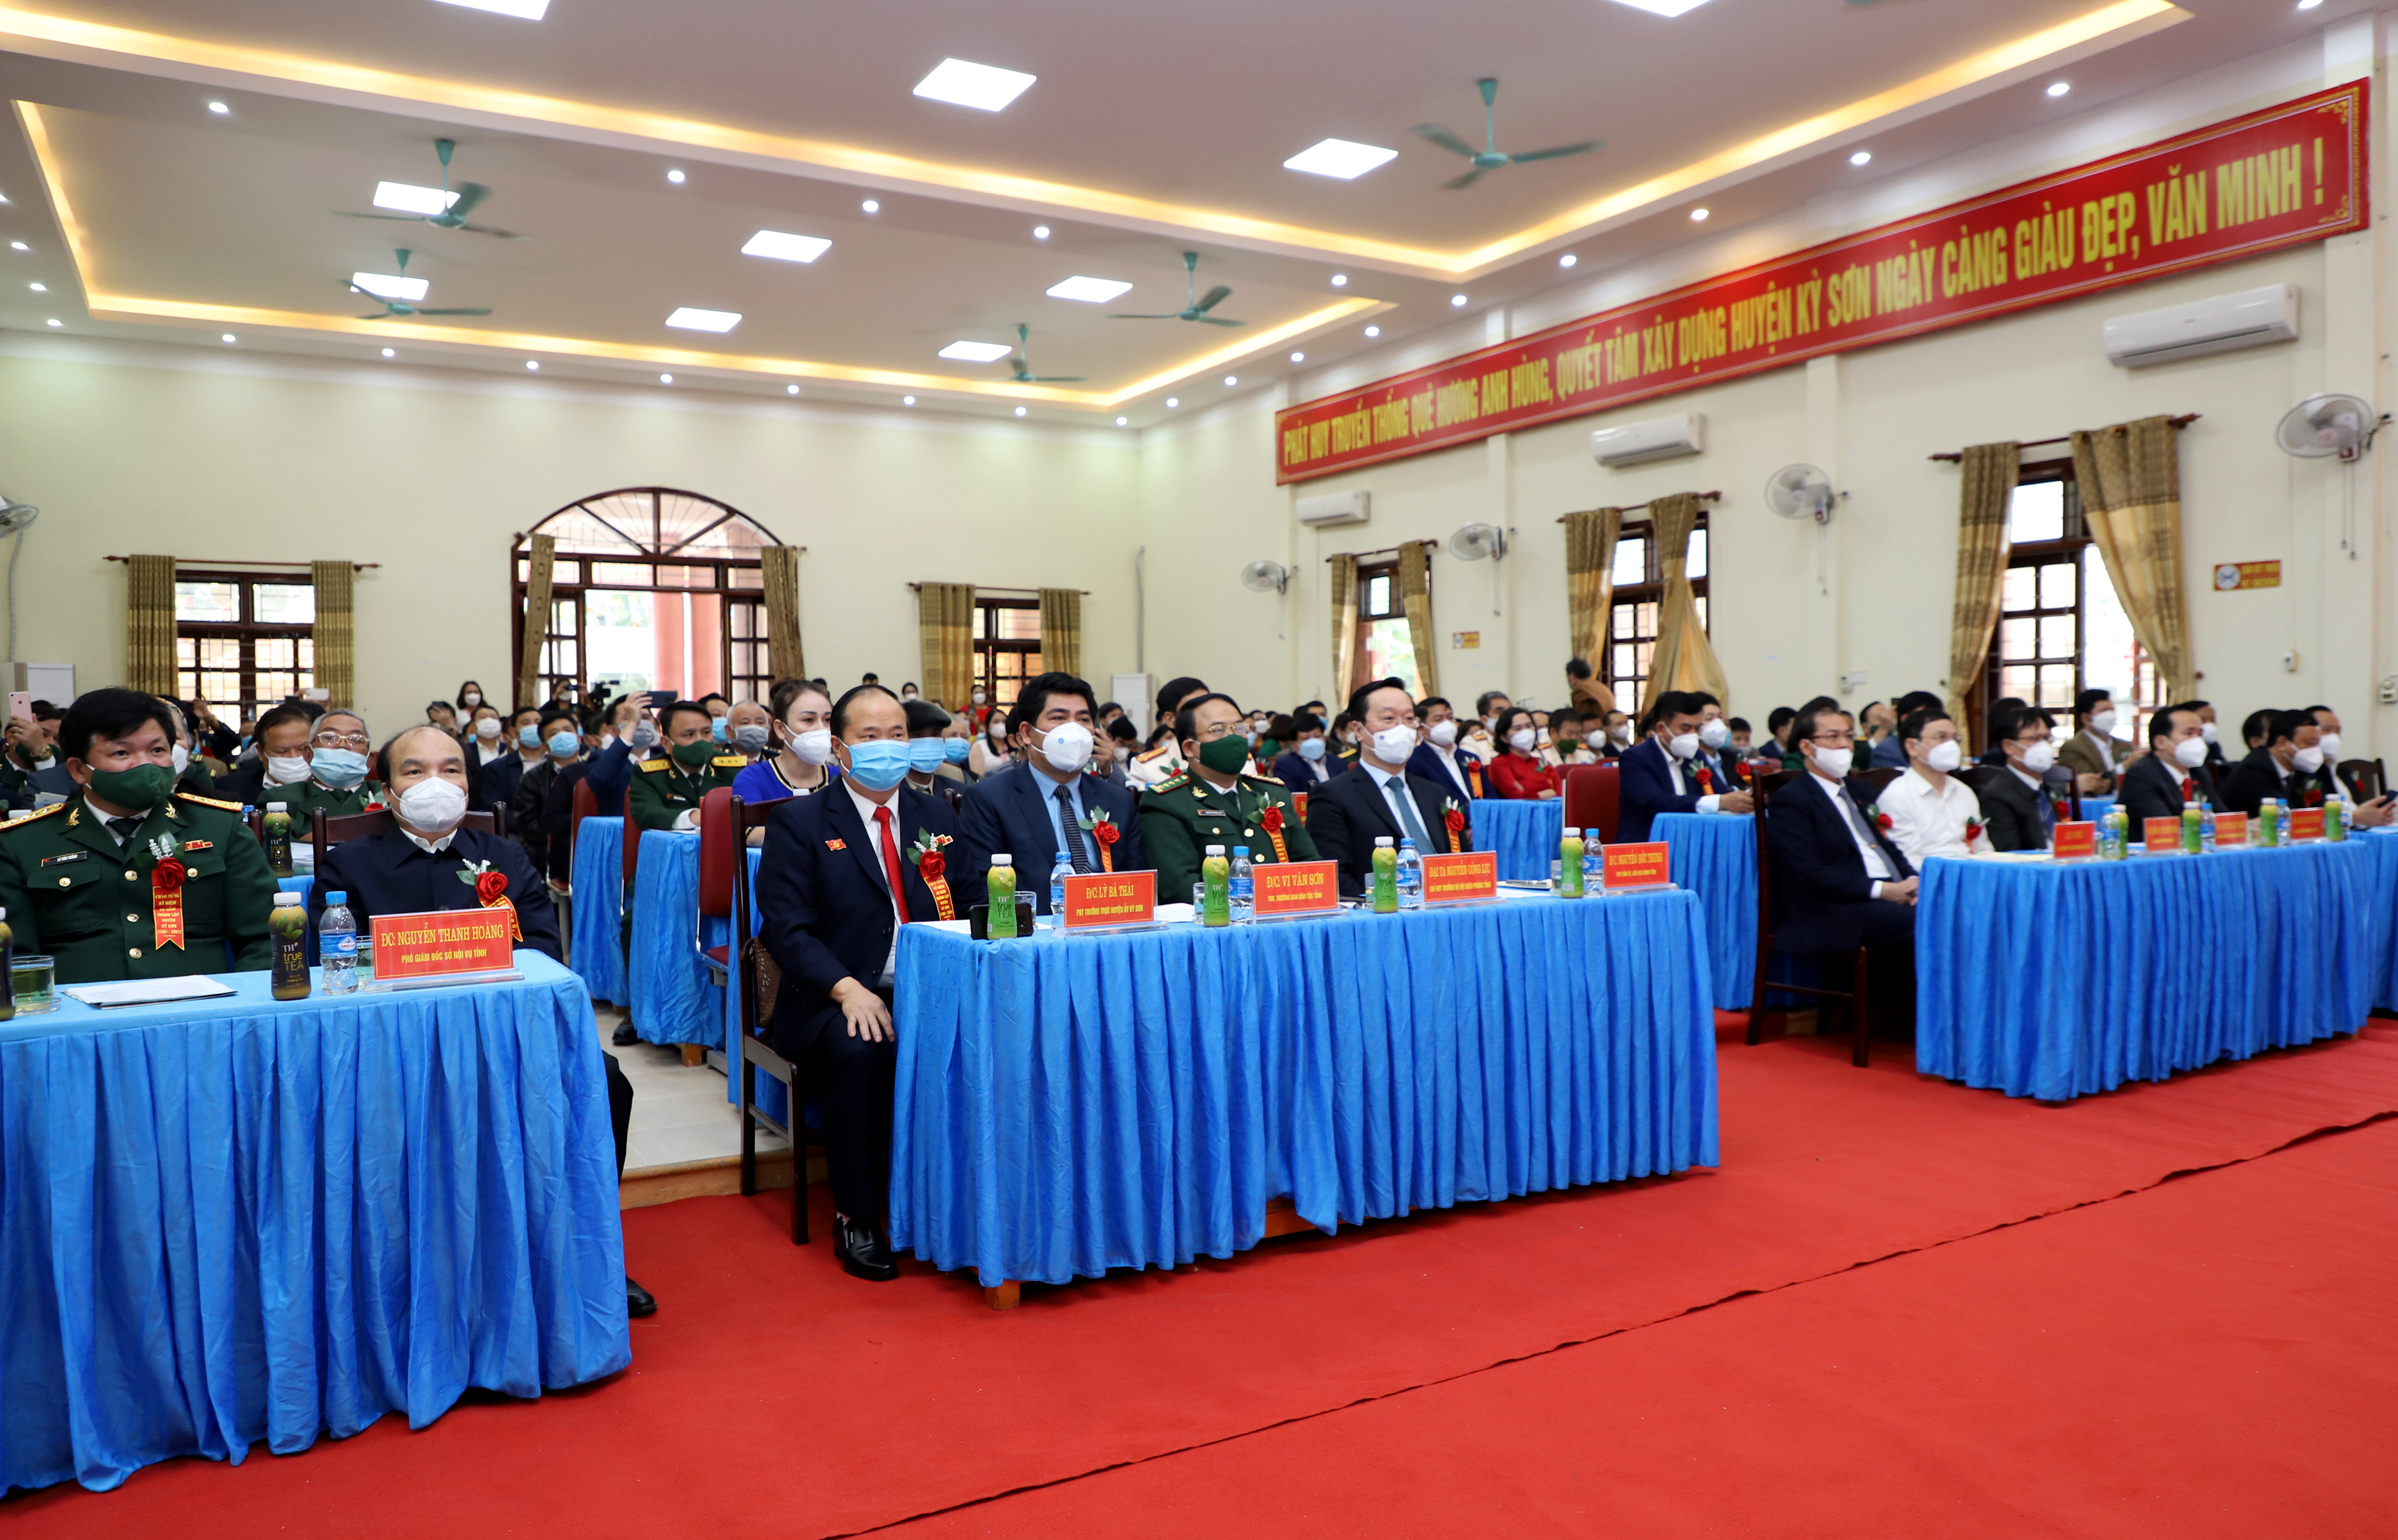 Đồng chí Nguyễn Đức Trung - Chủ tịch UBND tỉnh cùng lãnh đạo các sở, ngành, các huyện bạn về dự buổi tọa đàm. Ảnh: Phạm Bằng